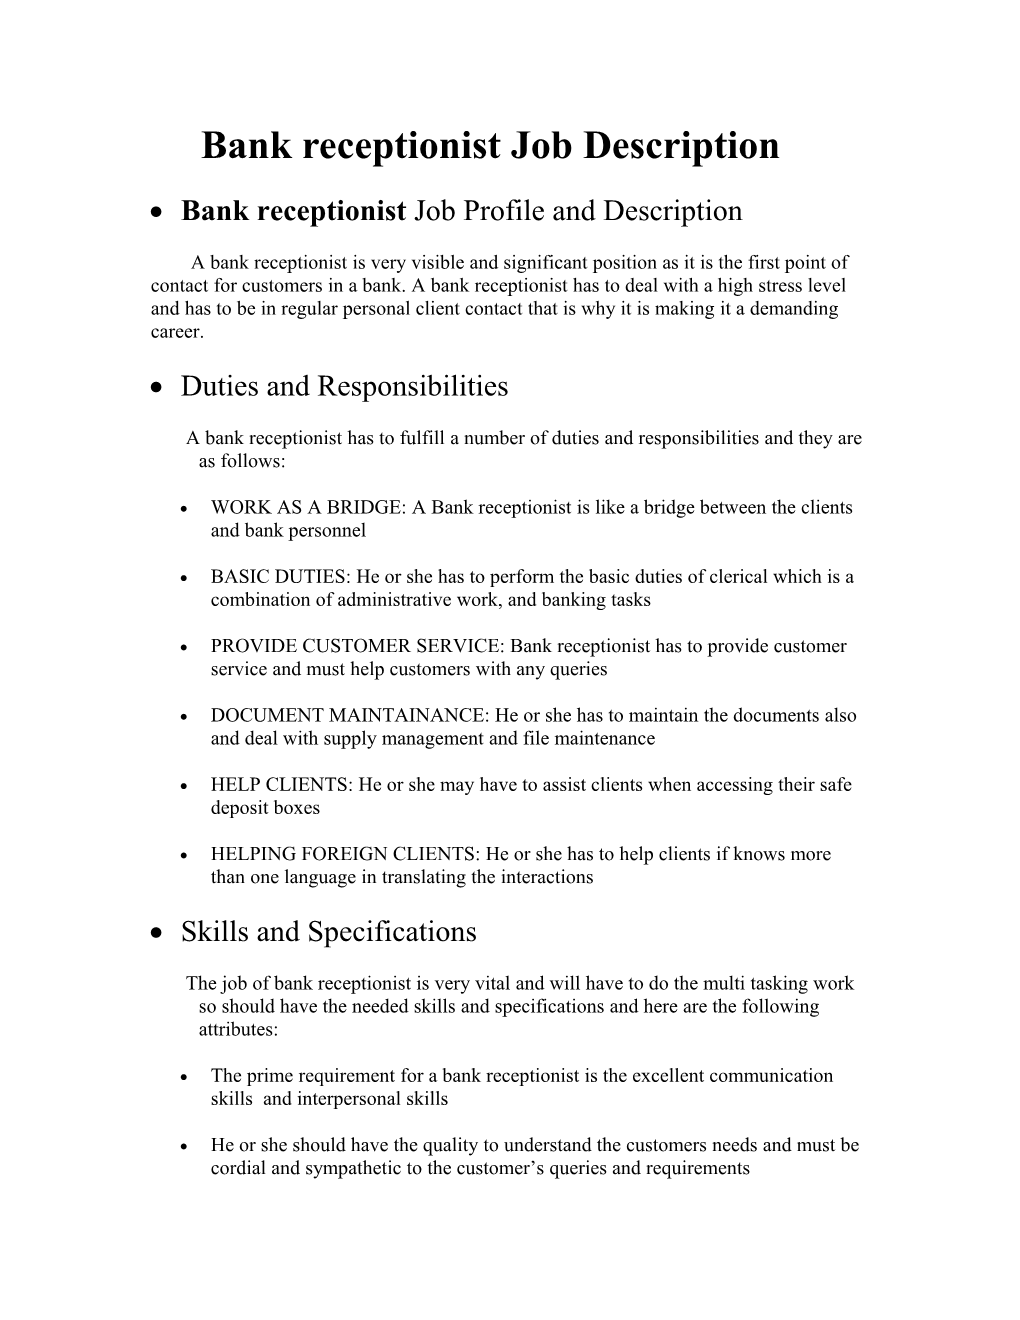 Bank Receptionist Job Description